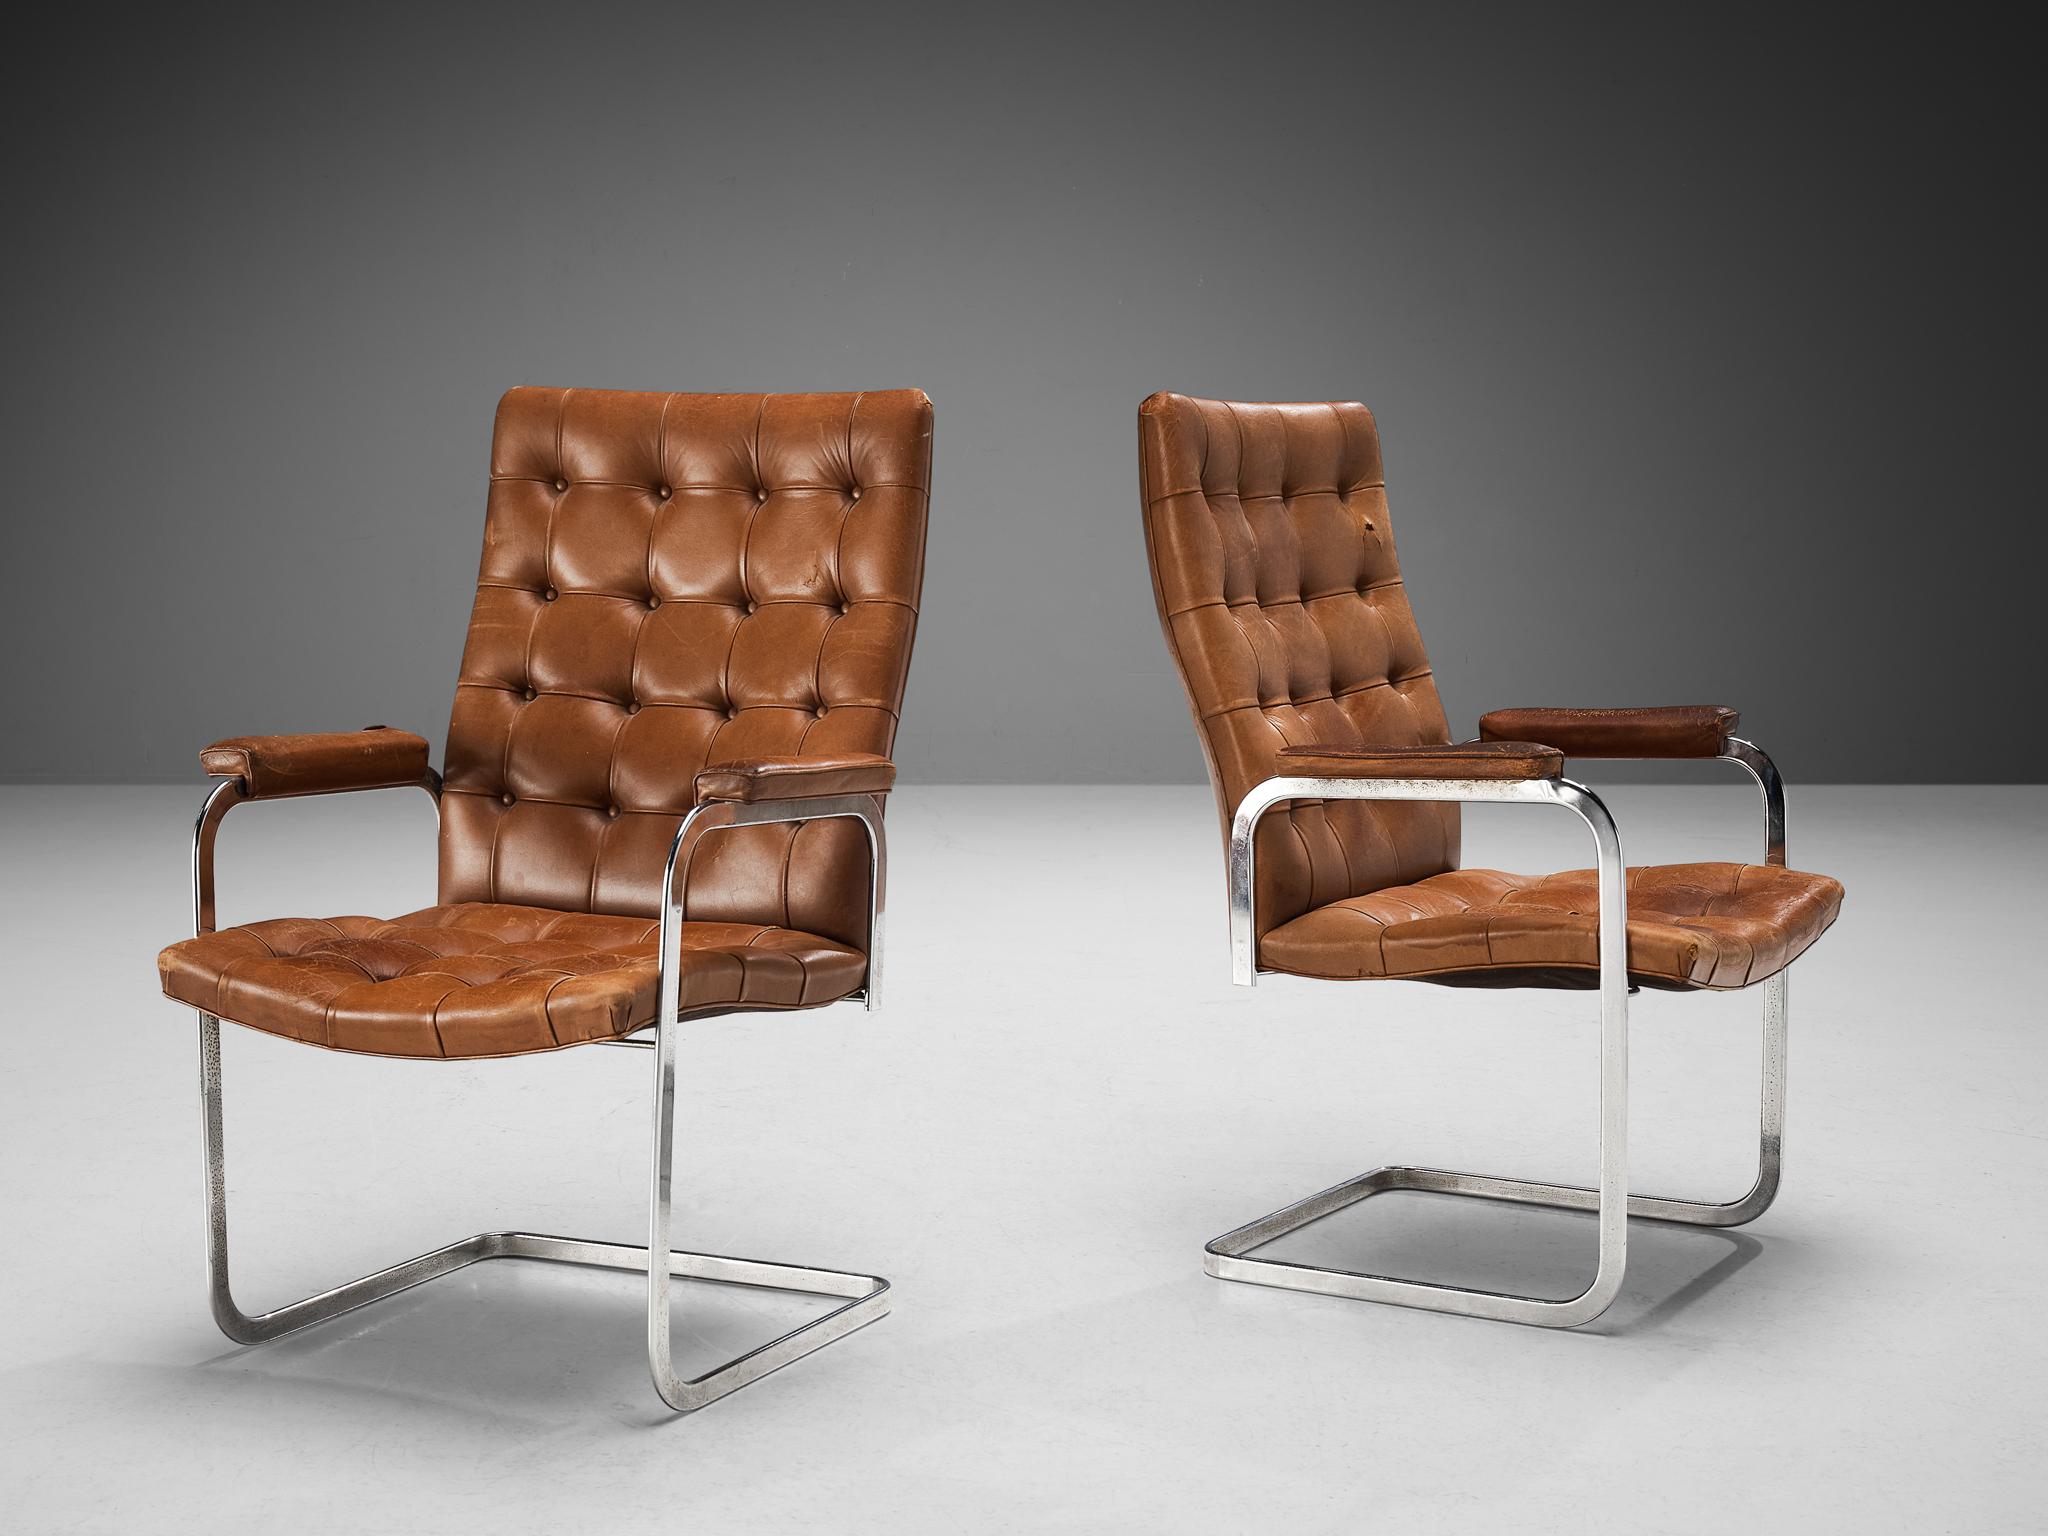 Robert Haussmann pour De Sede, paire de fauteuils, modèle 'RH-304', cuir et acier, Suisse, vers 1950. 

Cette paire de chaises touffetées en porte-à-faux avec accoudoirs en cuir est conçue par Robert Haussmann pour De Sede. L'ensemble présente une